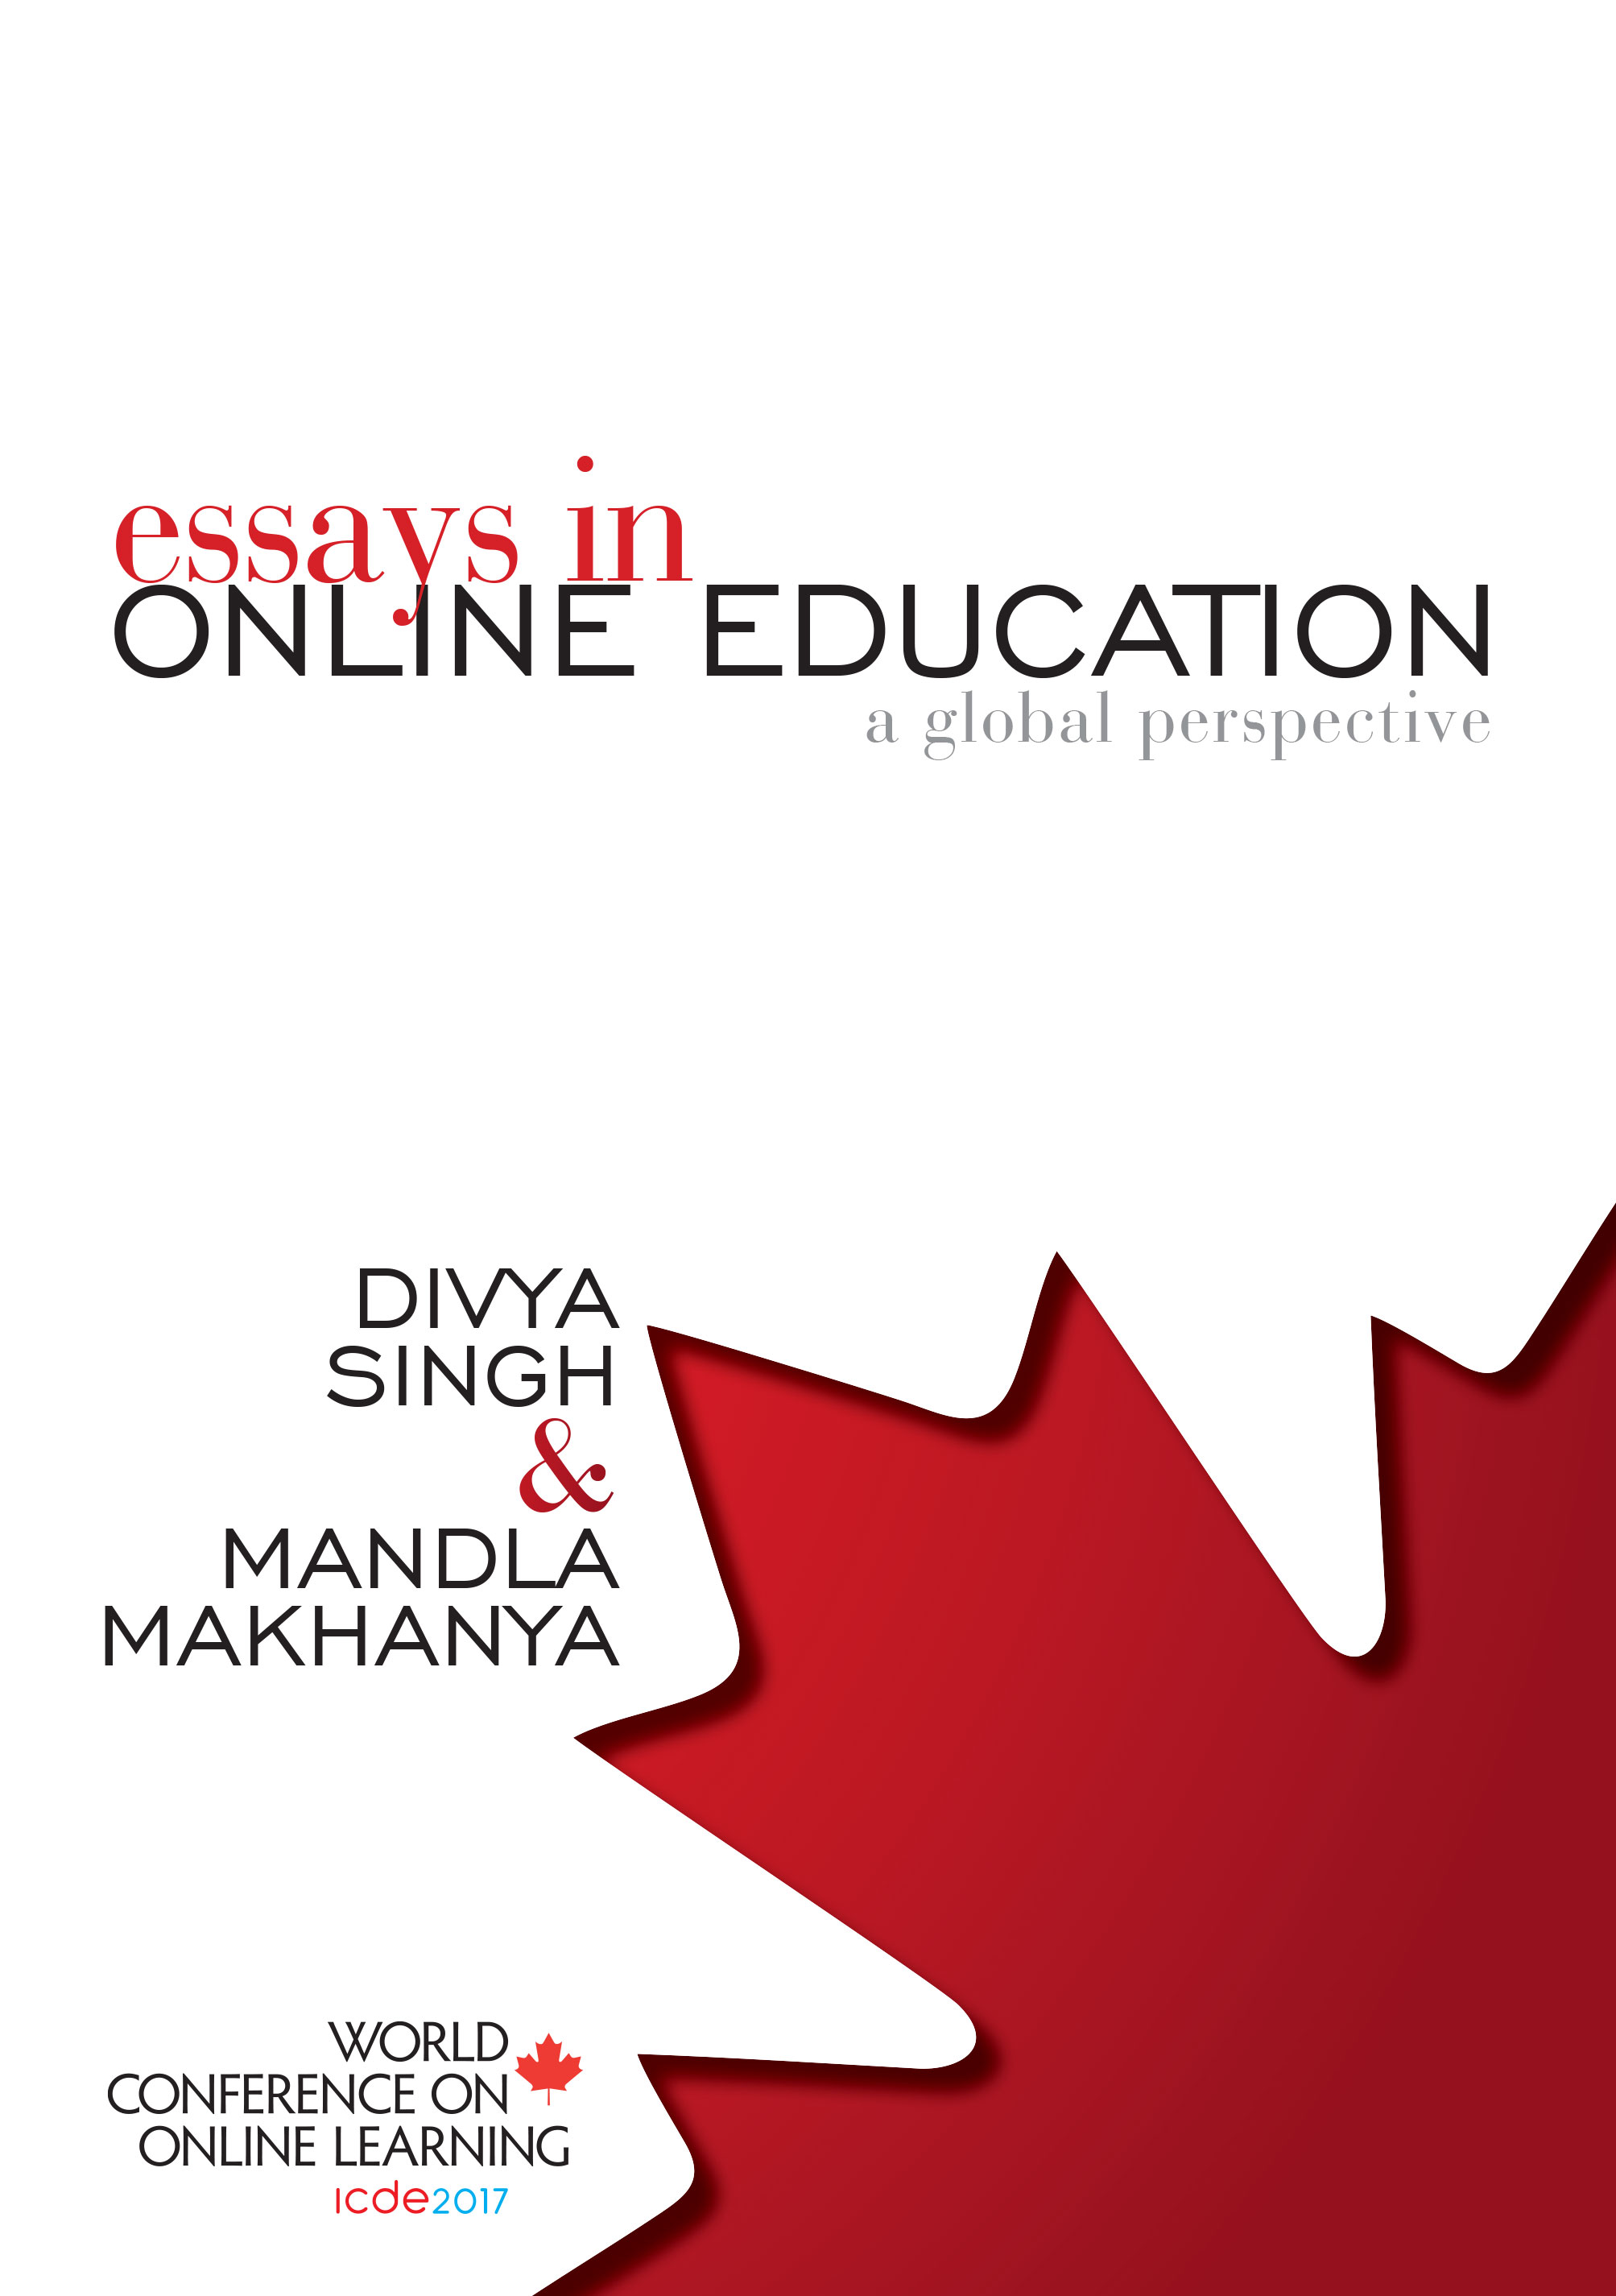 NEW-FILE_MAKANYA_SINGH_Essays-in-Online-Education.jpg